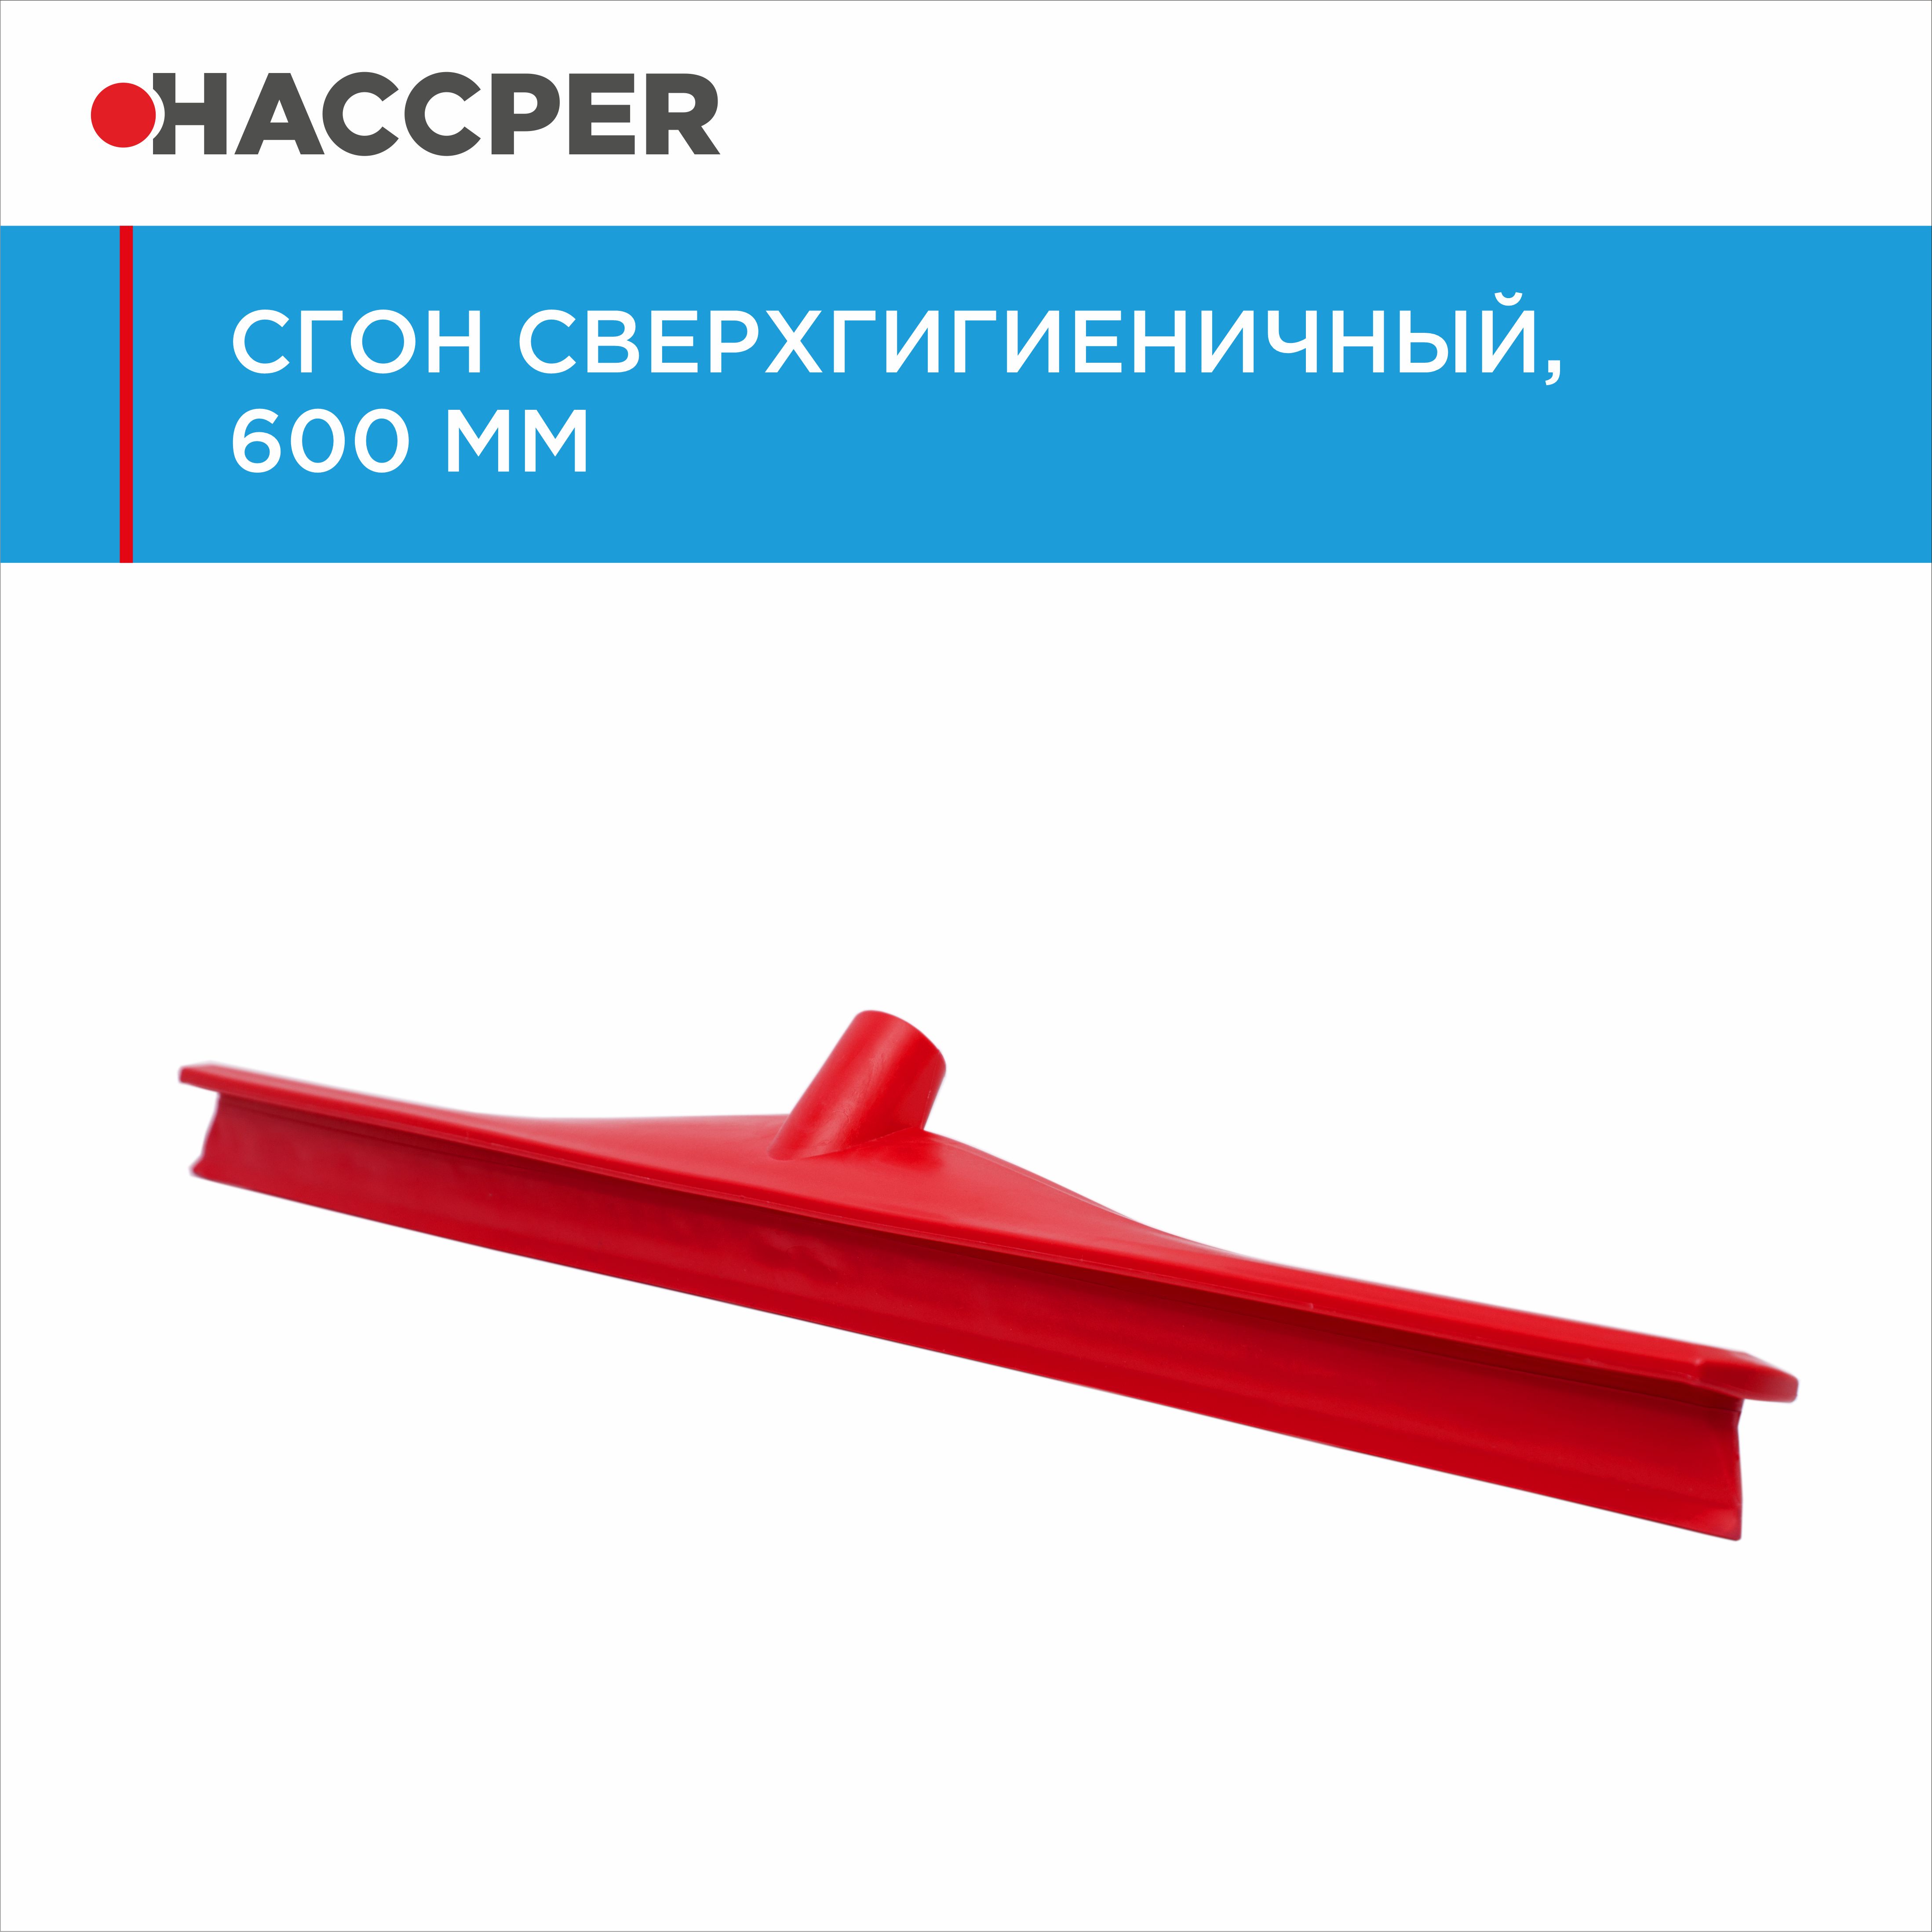 Сгон HACCPER сверхгигиеничный однолезвенный, 595 мм, красный